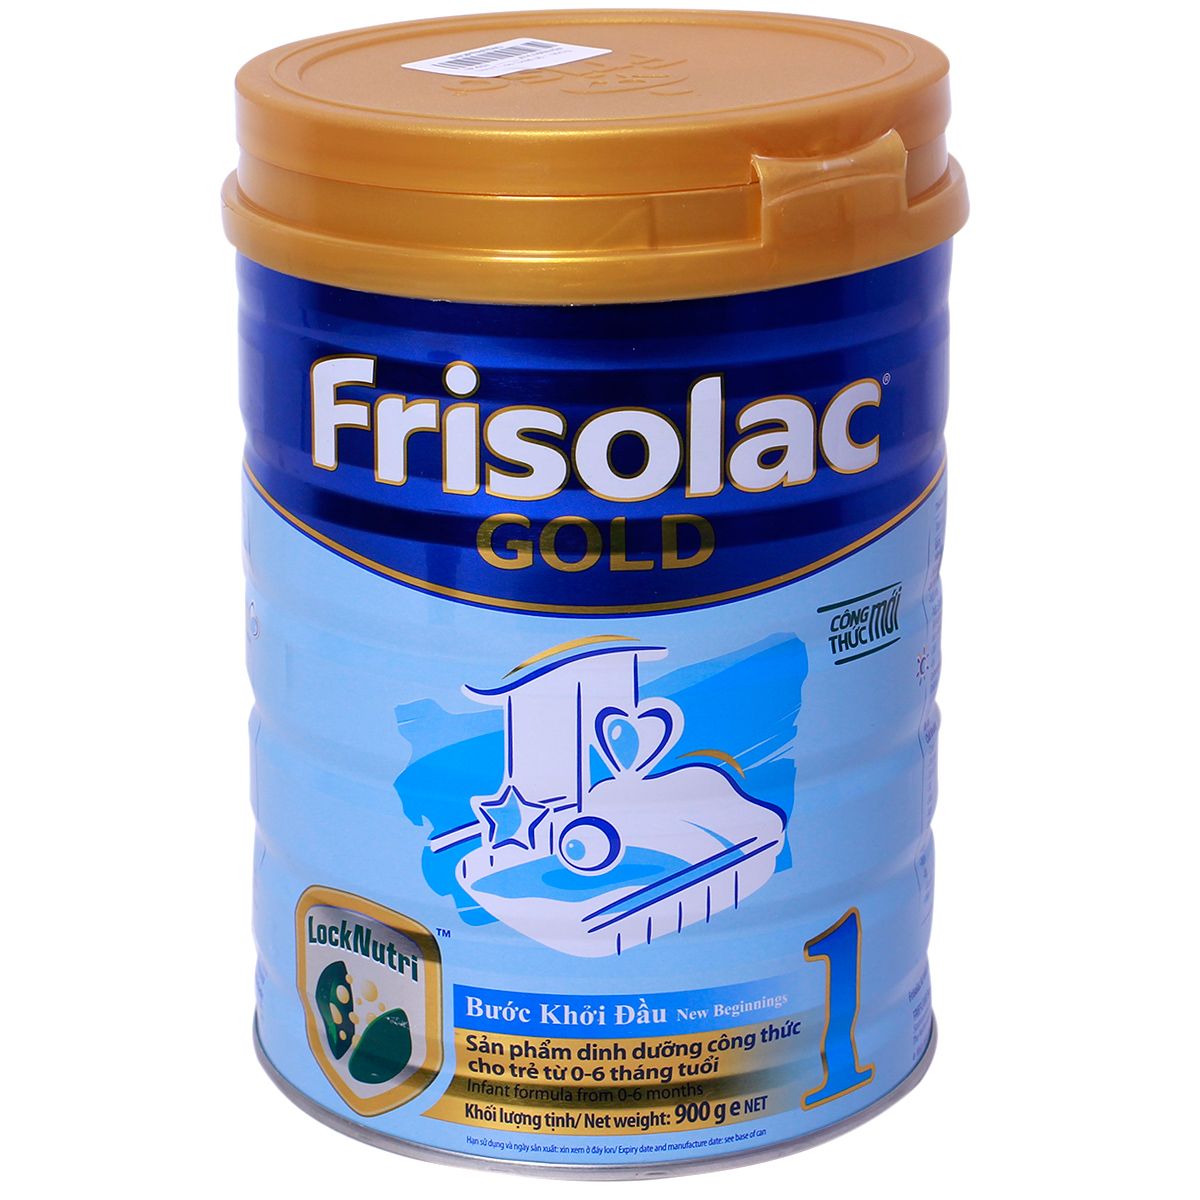 Sữa Frisolac Gold 1 900g